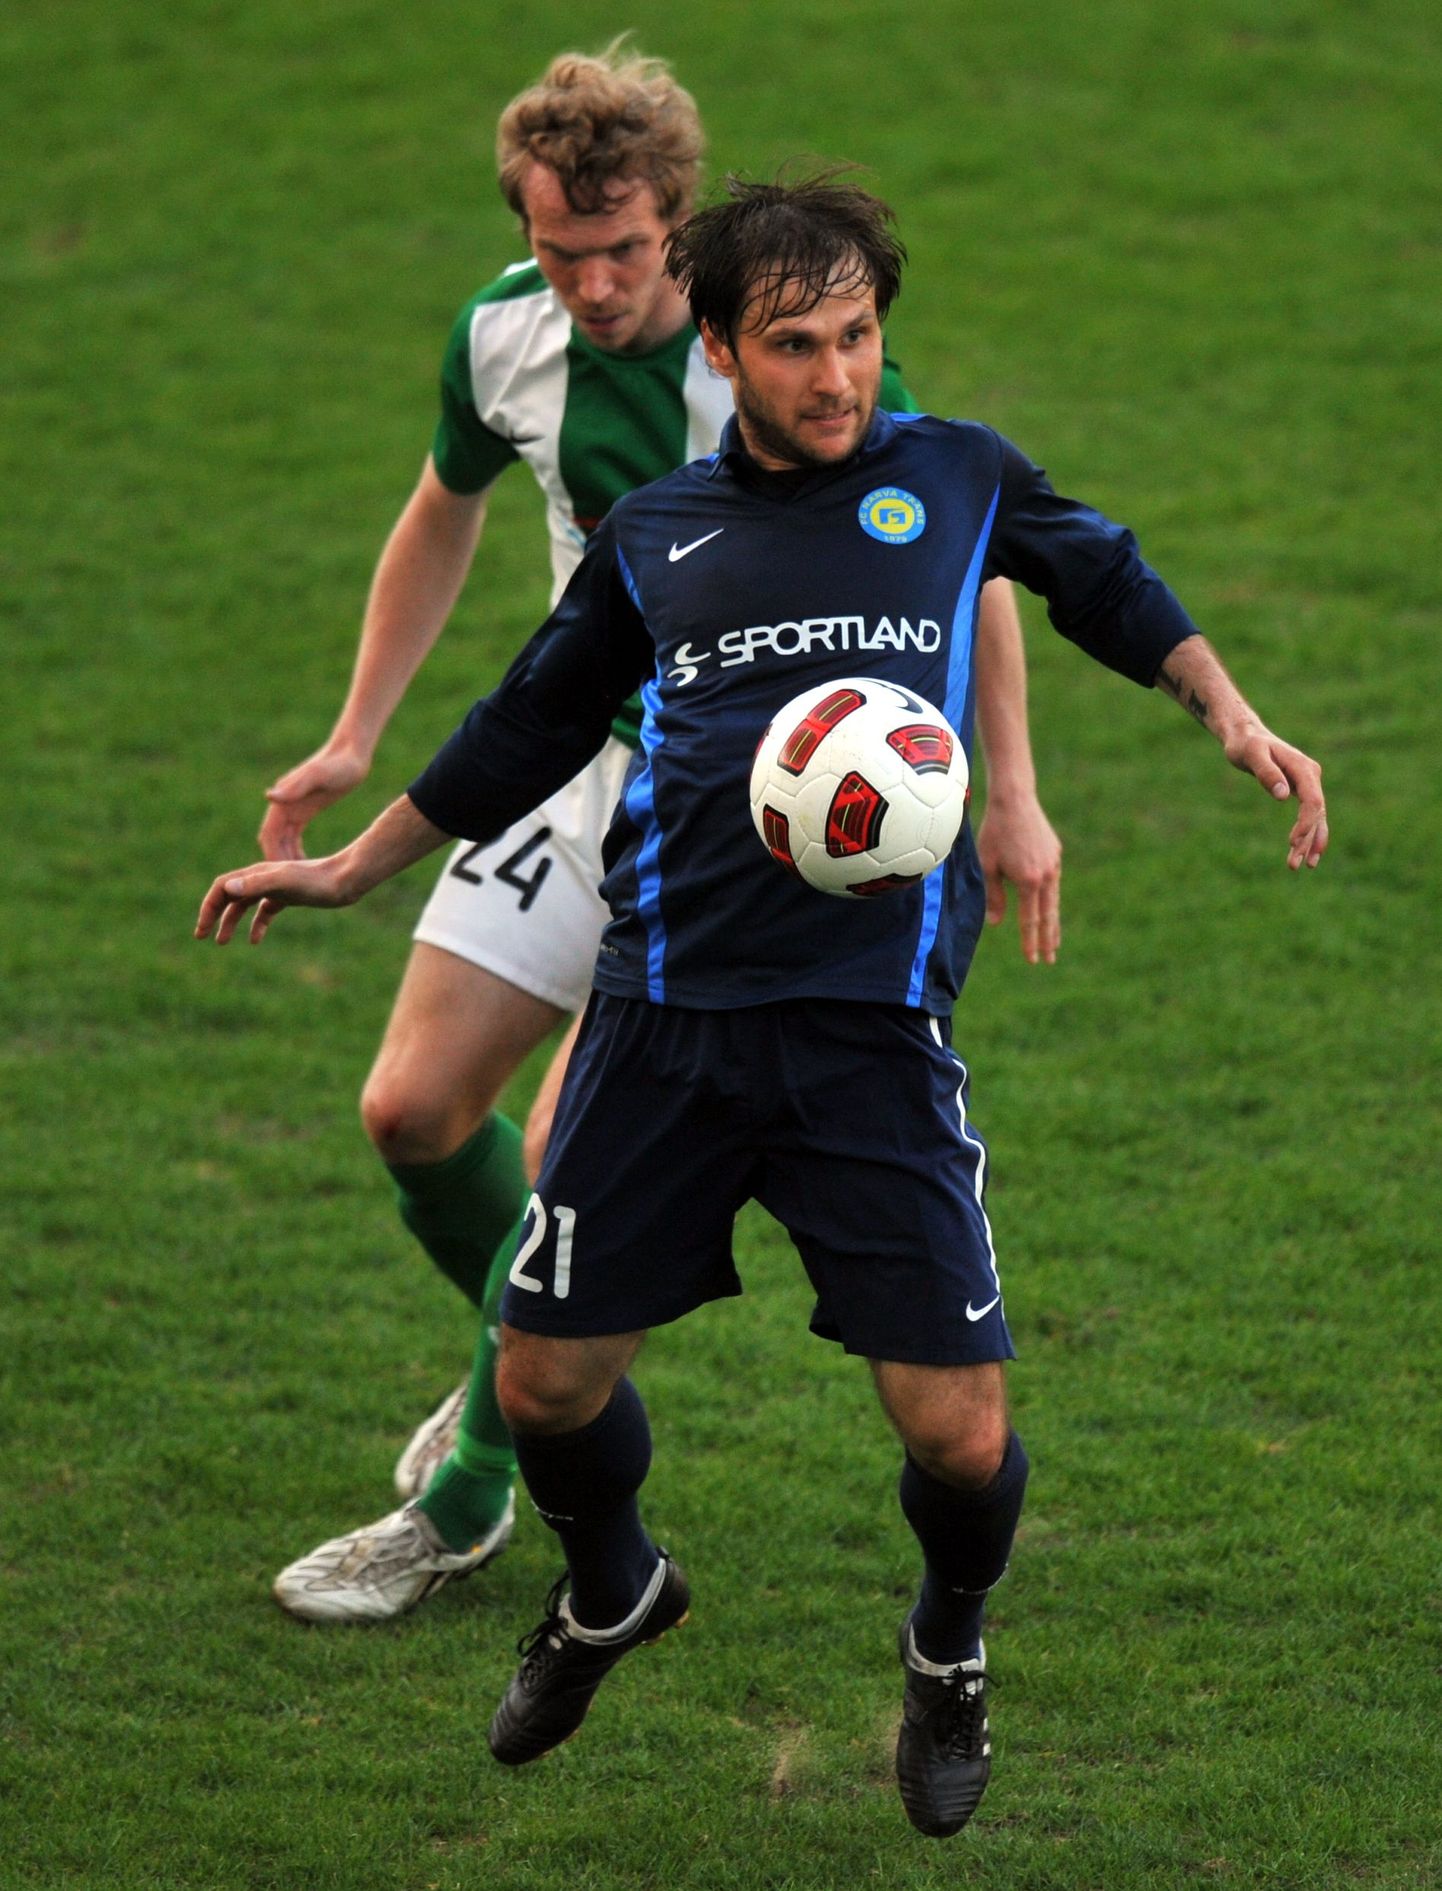 Игрок "Транса" Максим Базюкин (в синей форме) и игрок "Флоры" Карл Палату.